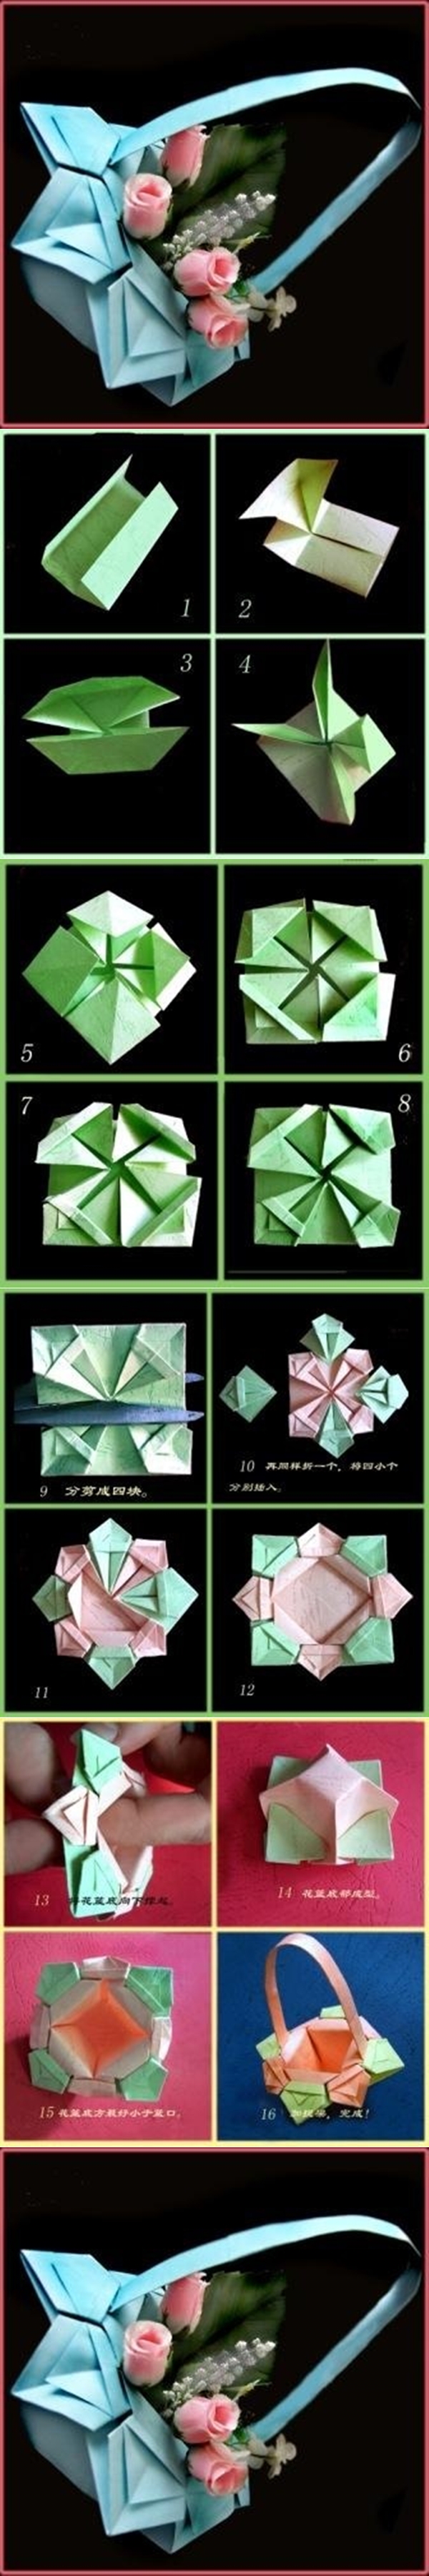 DIY Origami Paper Basket